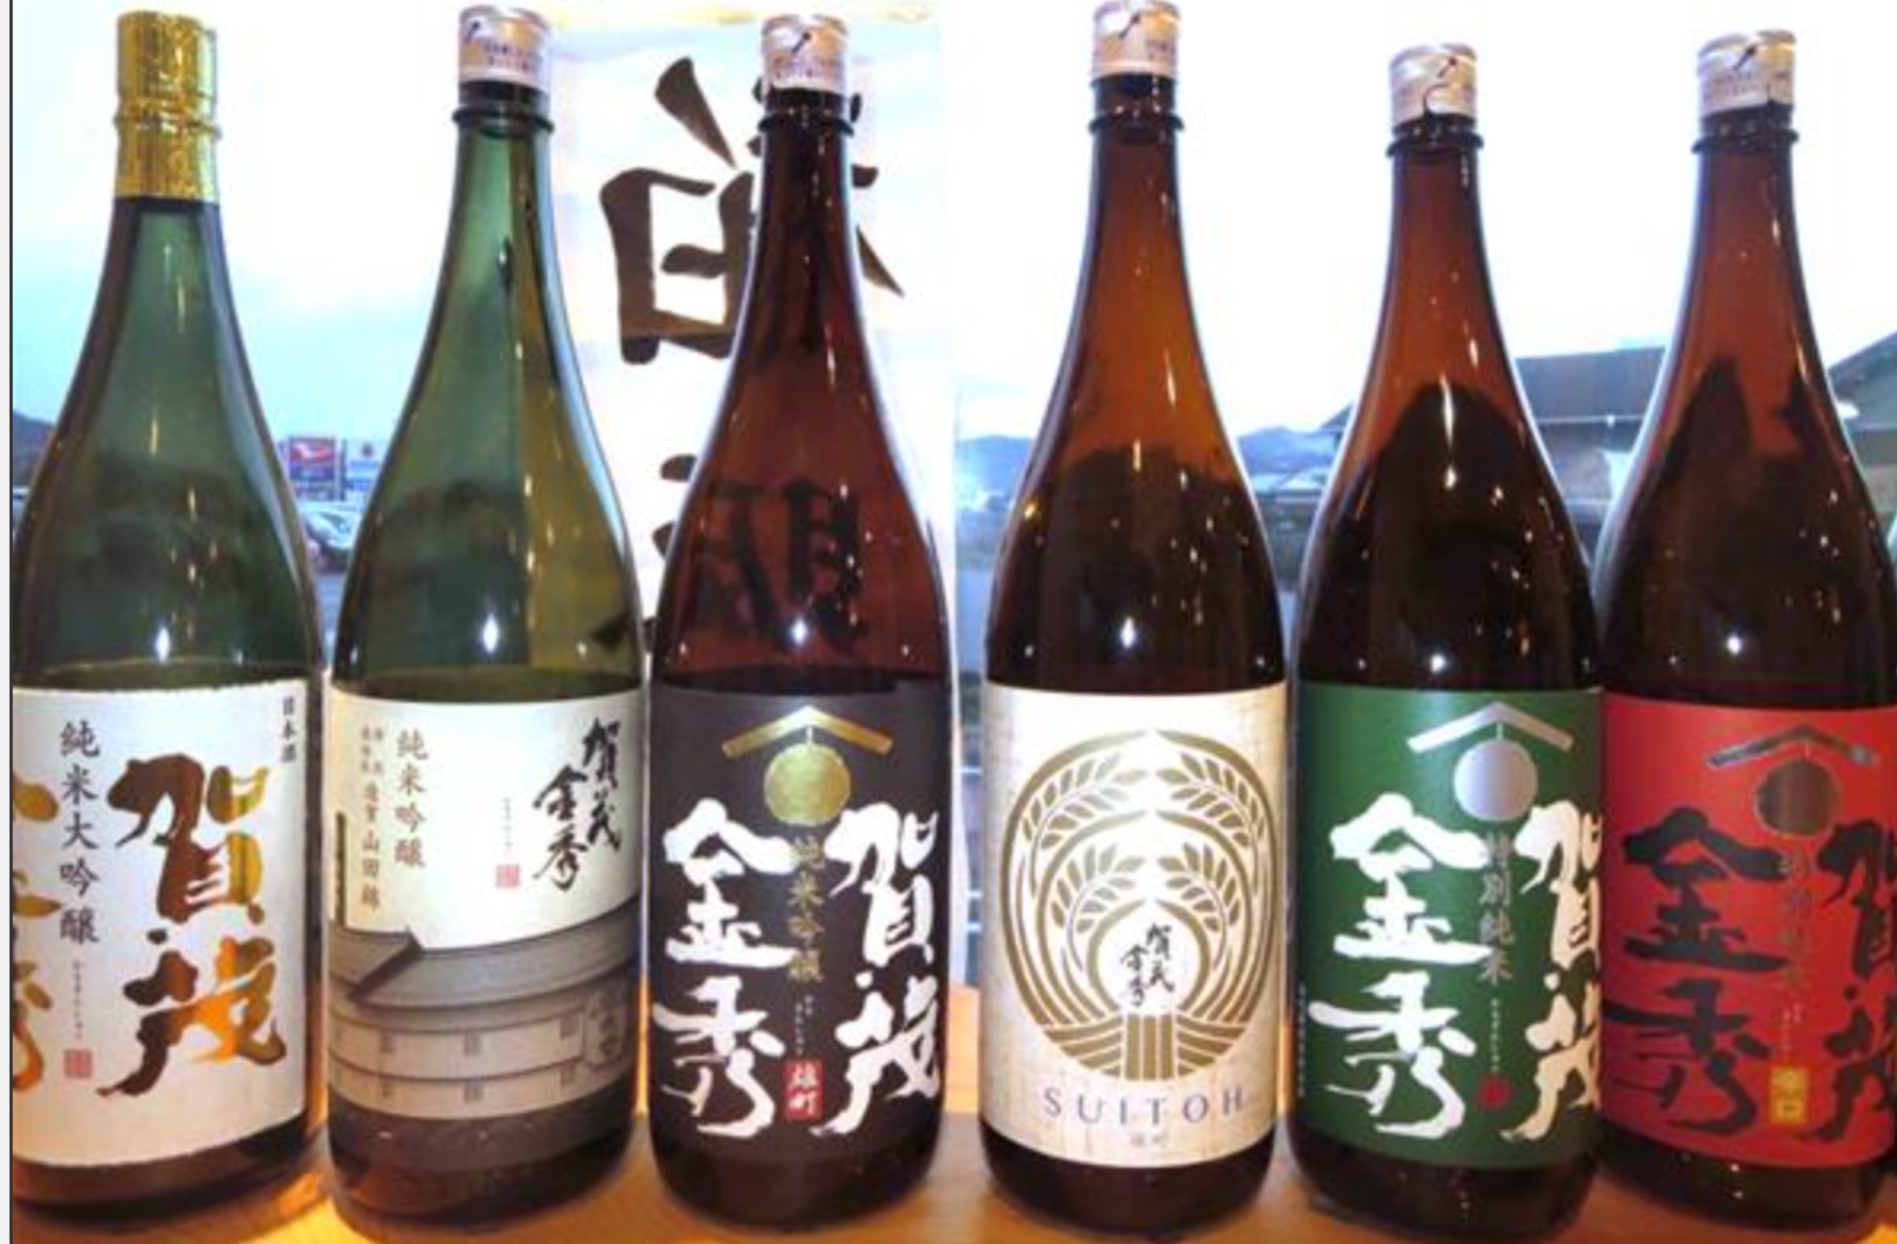 What kind of sake brand is 賀茂金秀 Kamokinnshu?